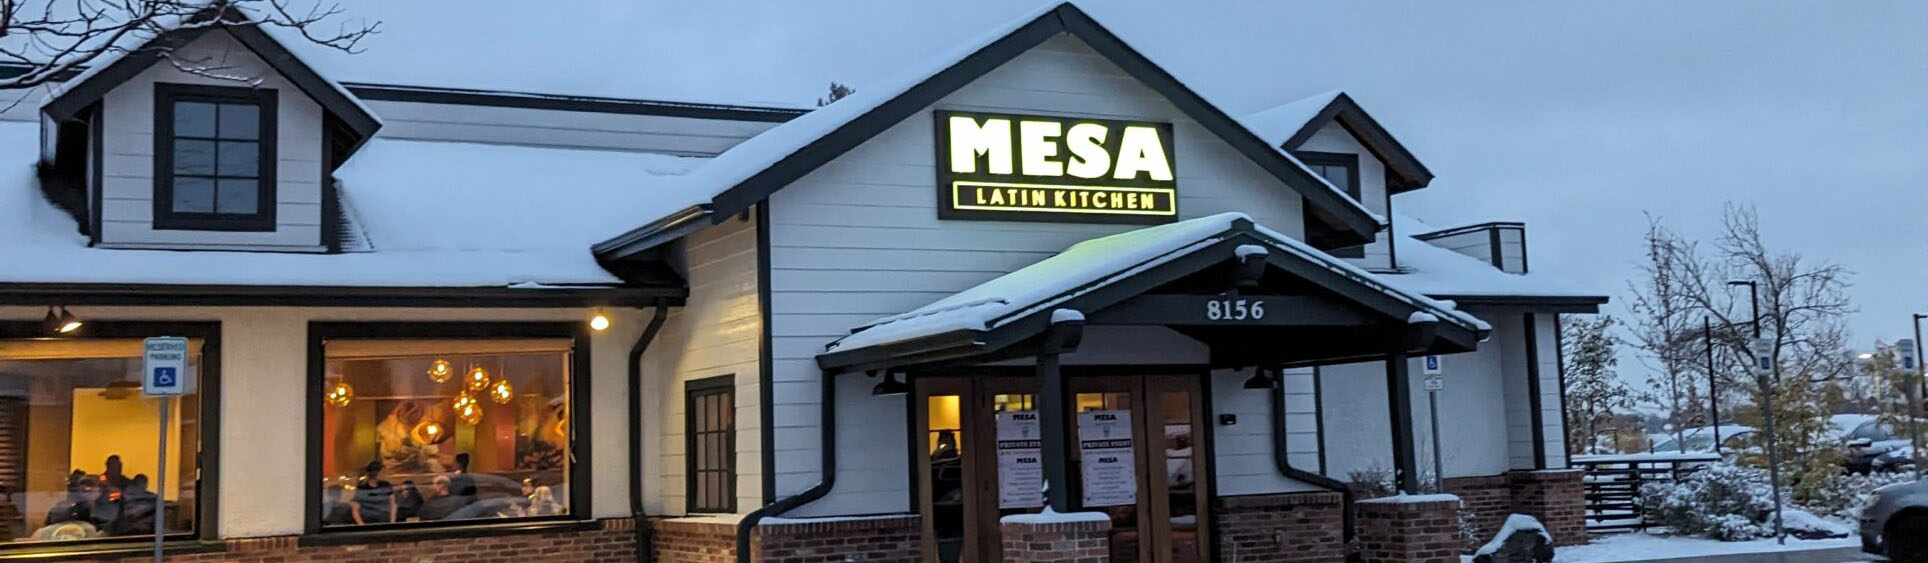 Mesa Latin Kitchen front entry